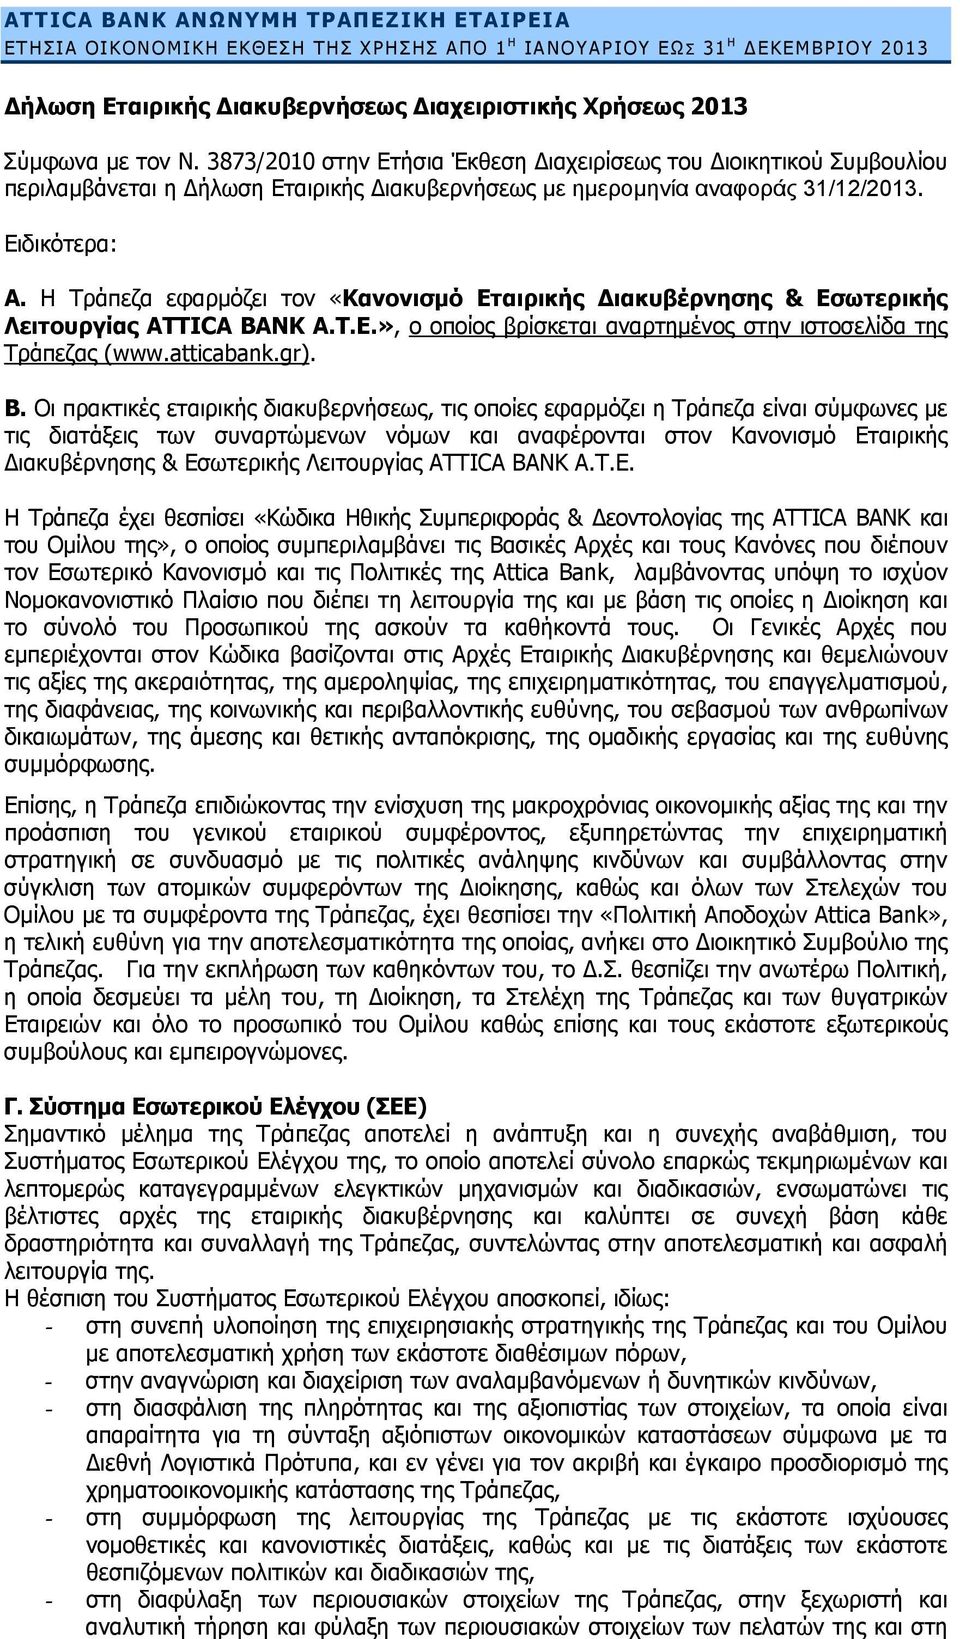 Η Τράπεζα εφαρμόζει τον «Κανονισμό Εταιρικής Διακυβέρνησης & Εσωτερικής Λειτουργίας ATTICA BANK A.T.E.», ο οποίος βρίσκεται αναρτημένος στην ιστοσελίδα της Τράπεζας (www.atticabank.gr). Β.